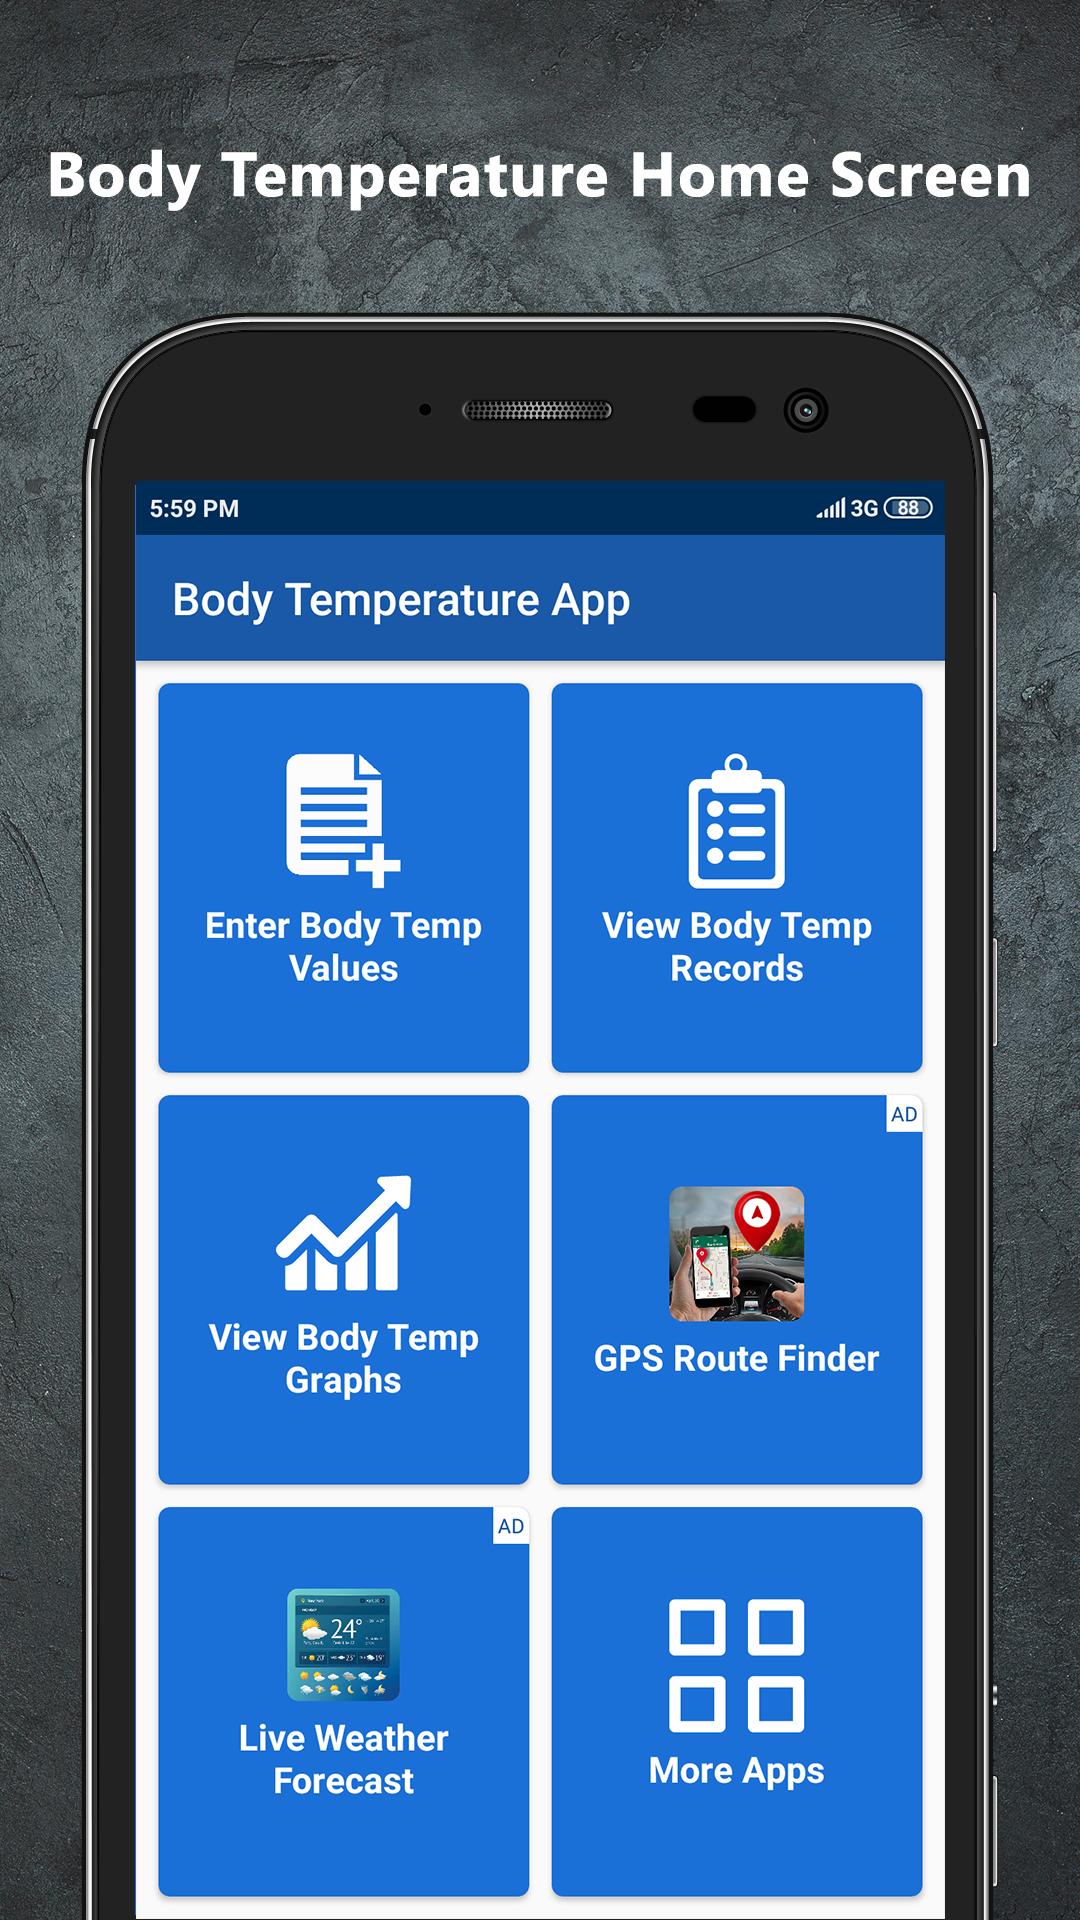 App Temp. Temperature apps. Ps4 temperature приложение. Приложение длятедефона температура. Https portal fpc temp app apk